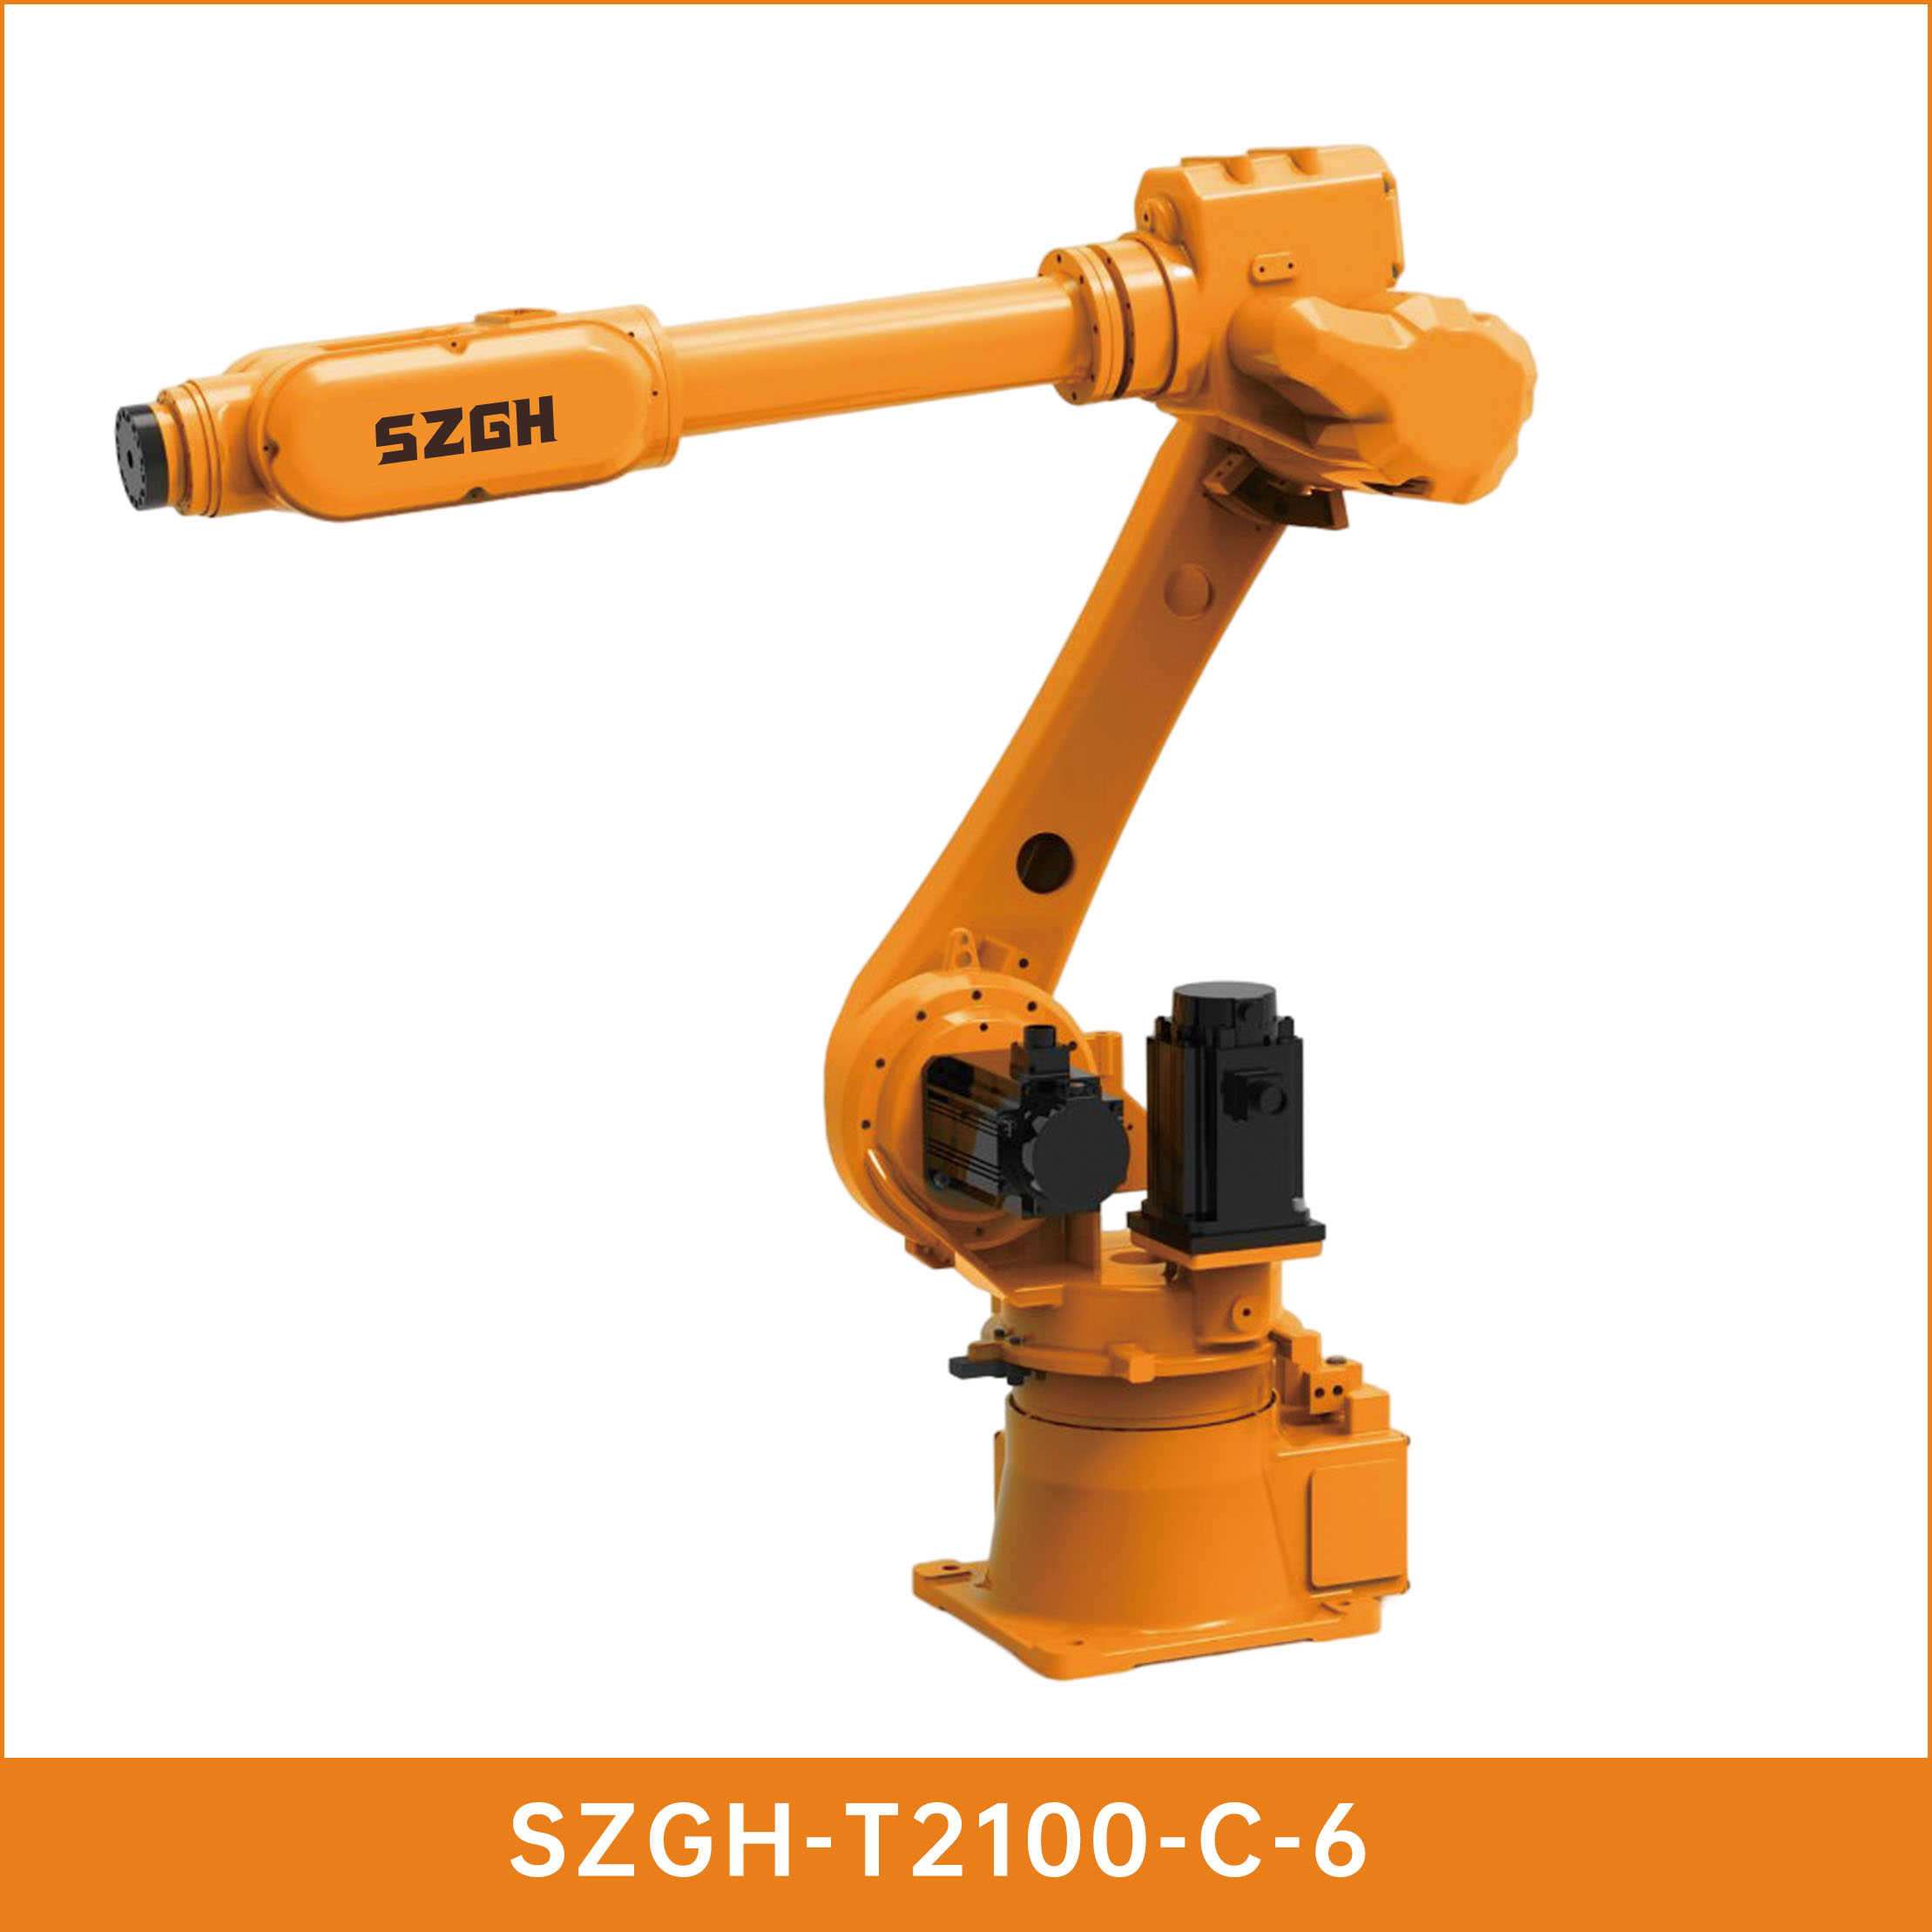 SZGH-T2100-C-6